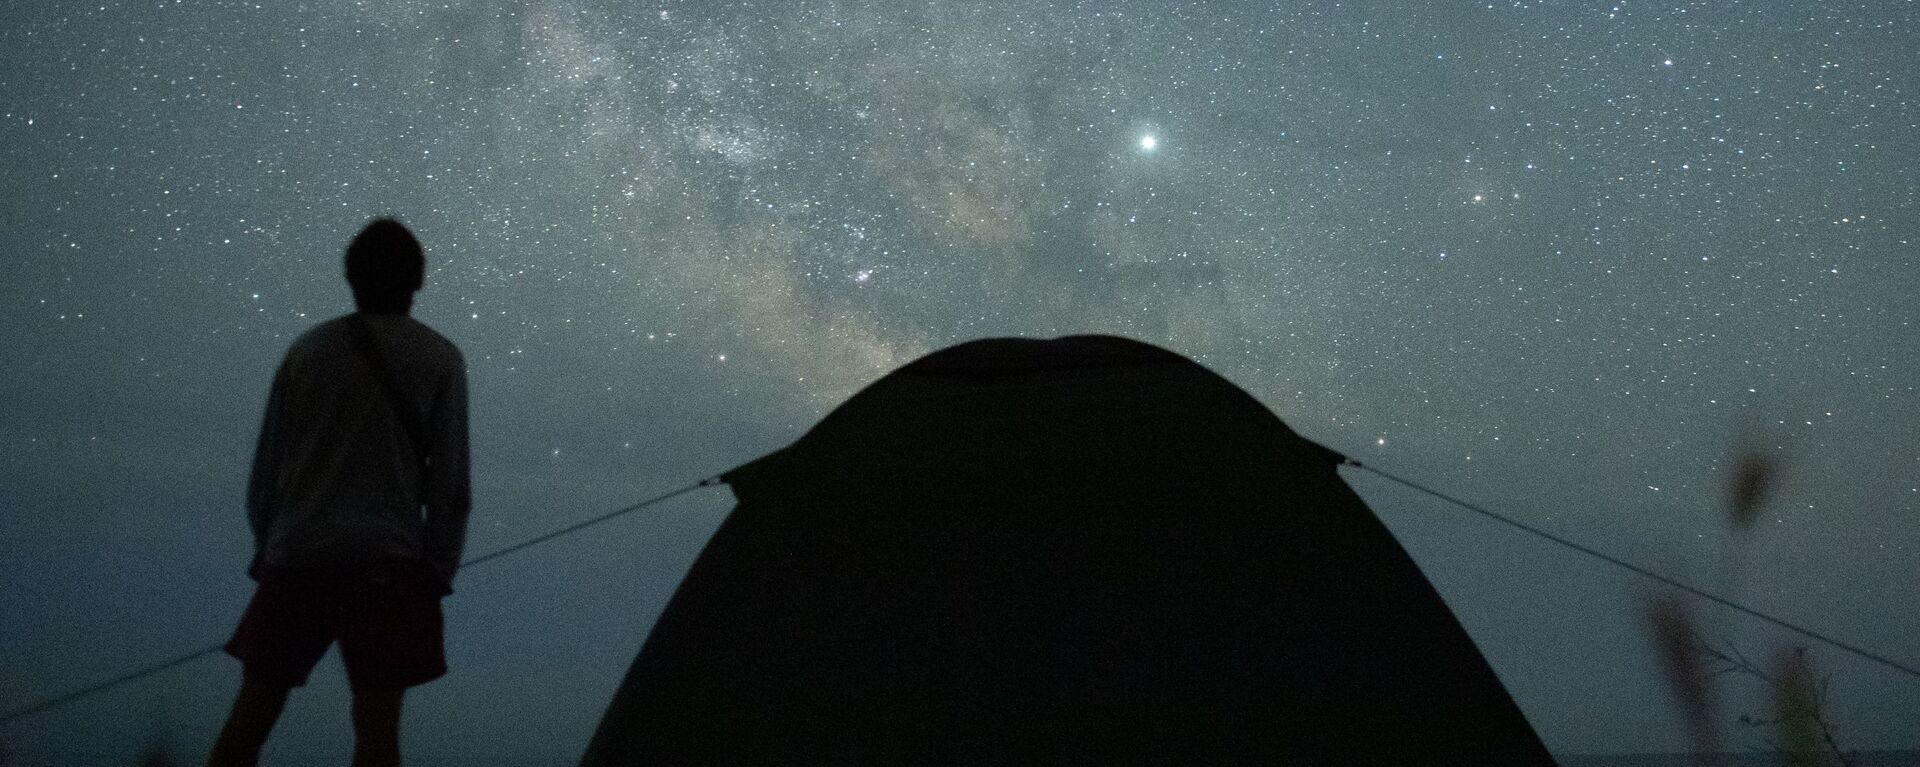 Мужчина наблюдает за звездным небом. Архивное фото - Sputnik Кыргызстан, 1920, 05.10.2021